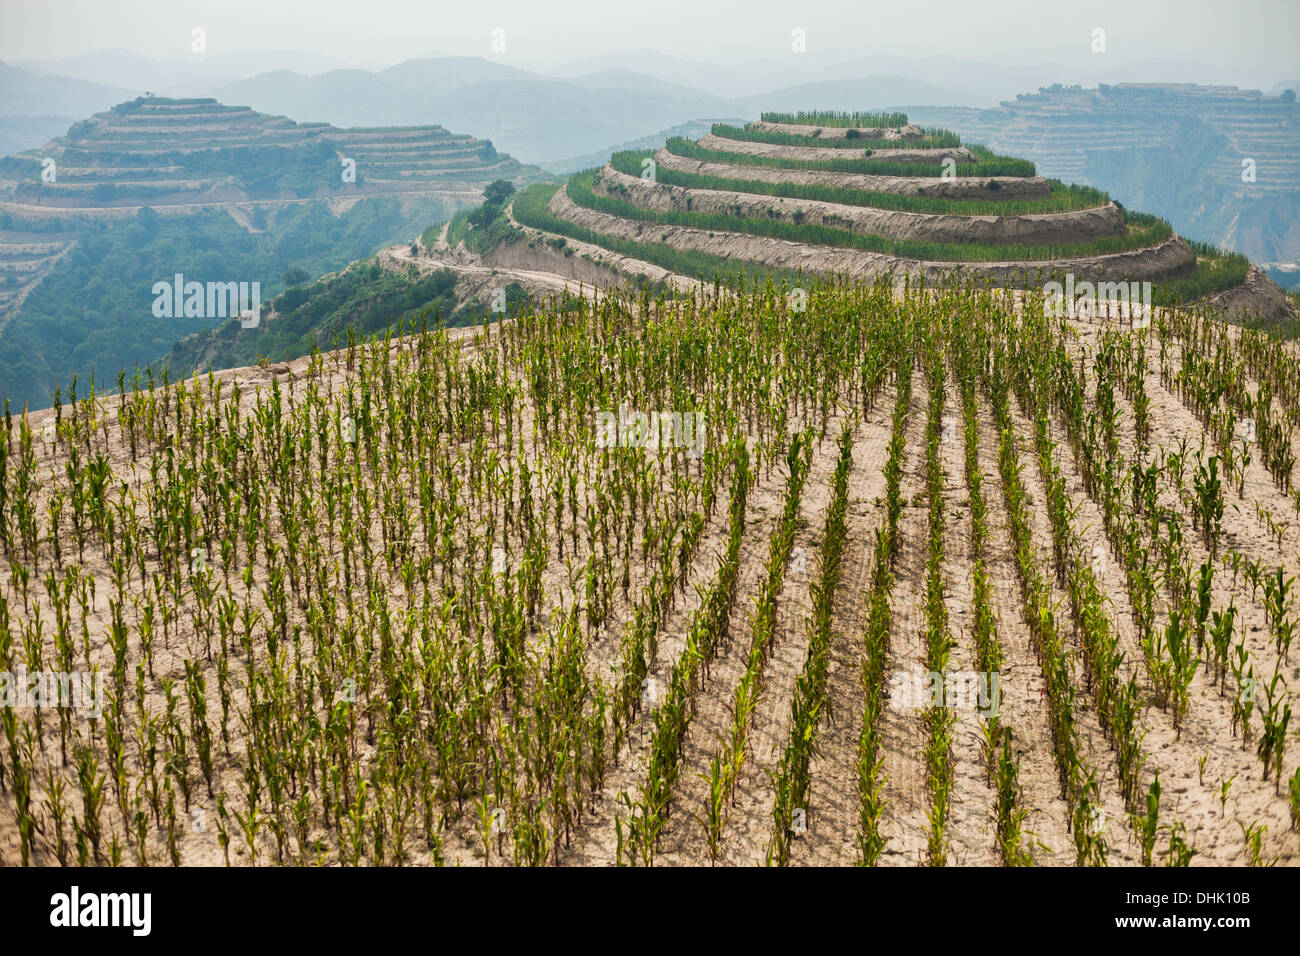 Les champs en terrasses à flanc de colline, dans la province du Shanxi en Chine Banque D'Images